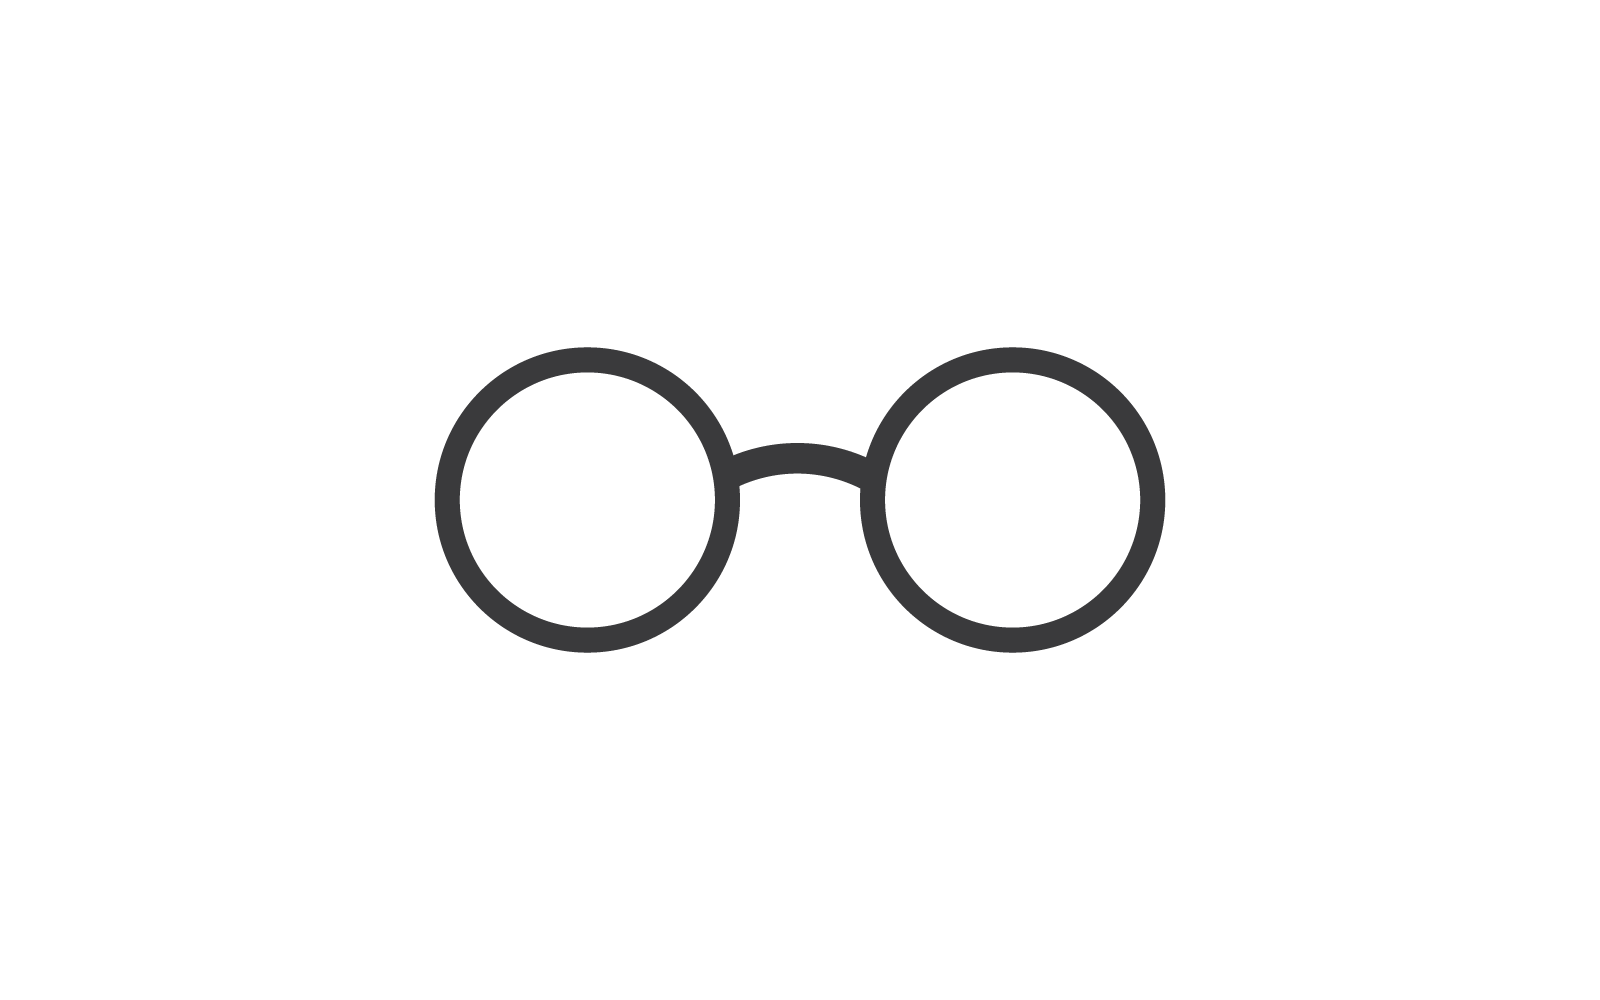 Иллюстрация логотипа в очках, иконка векторного плоского дизайна, шаблон